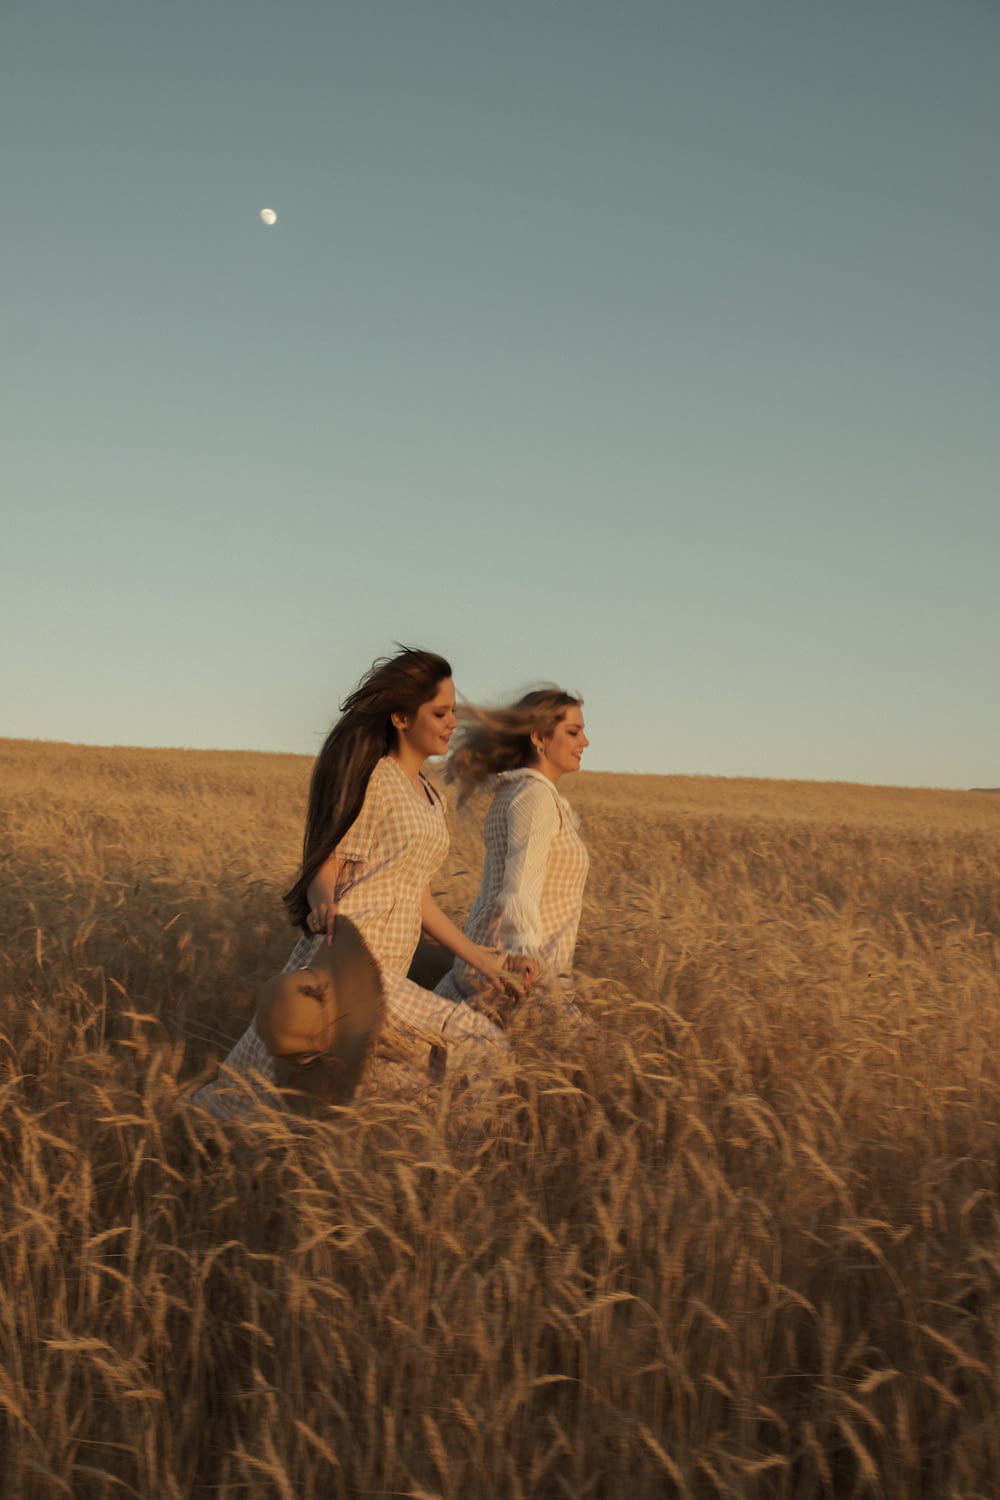 two women walking through a field of tall grass